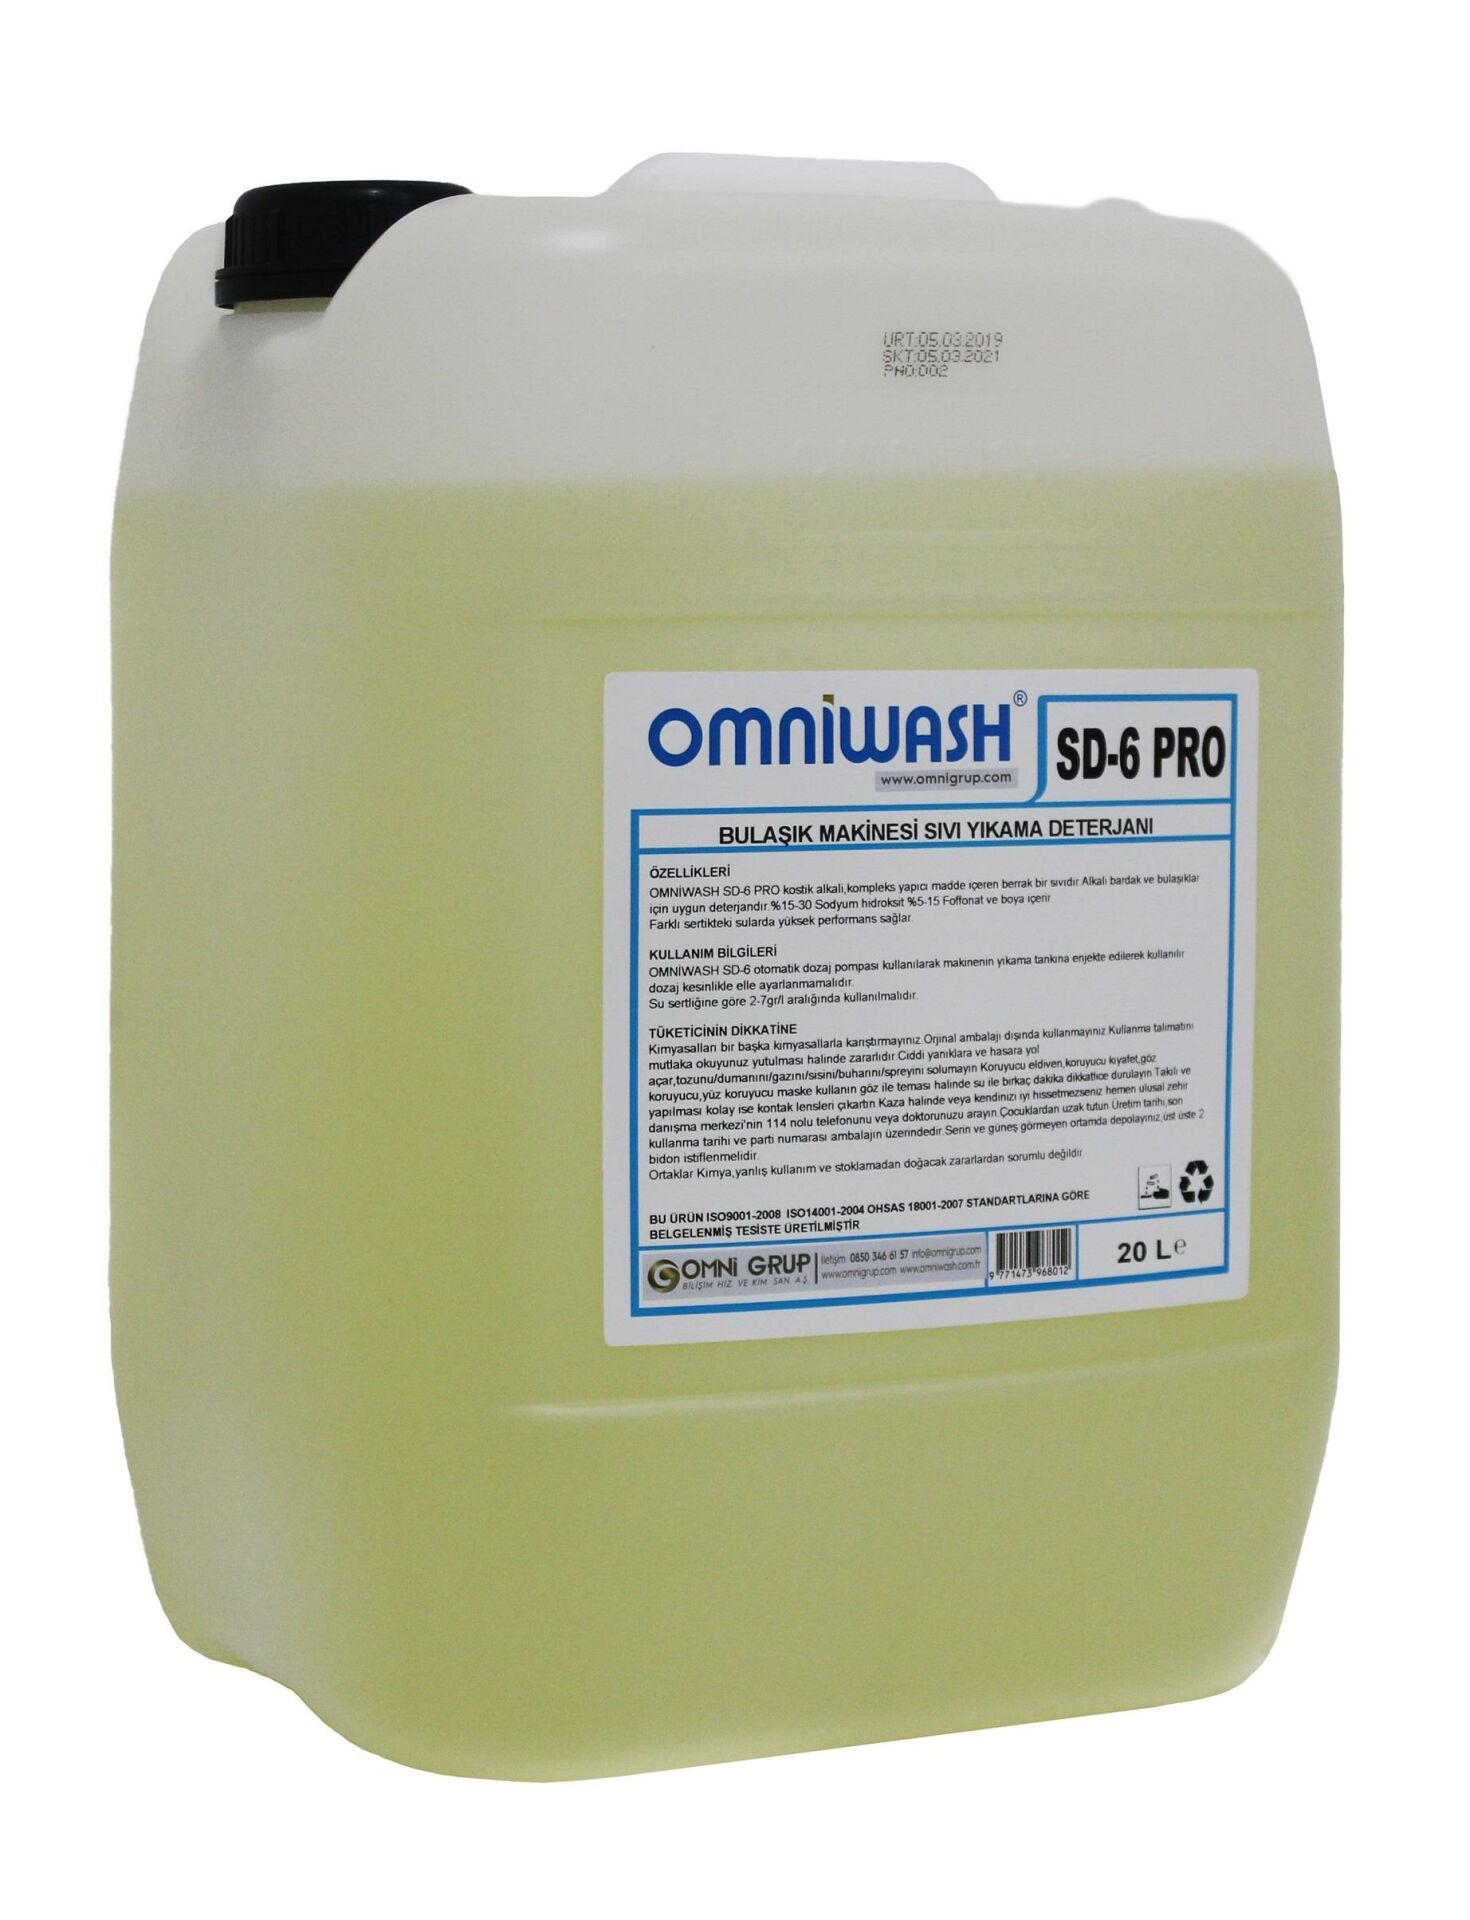 Omniwash SD-6 Pro 23,3 Kg Endüstriyel Bulaşık Makine Deterjanı